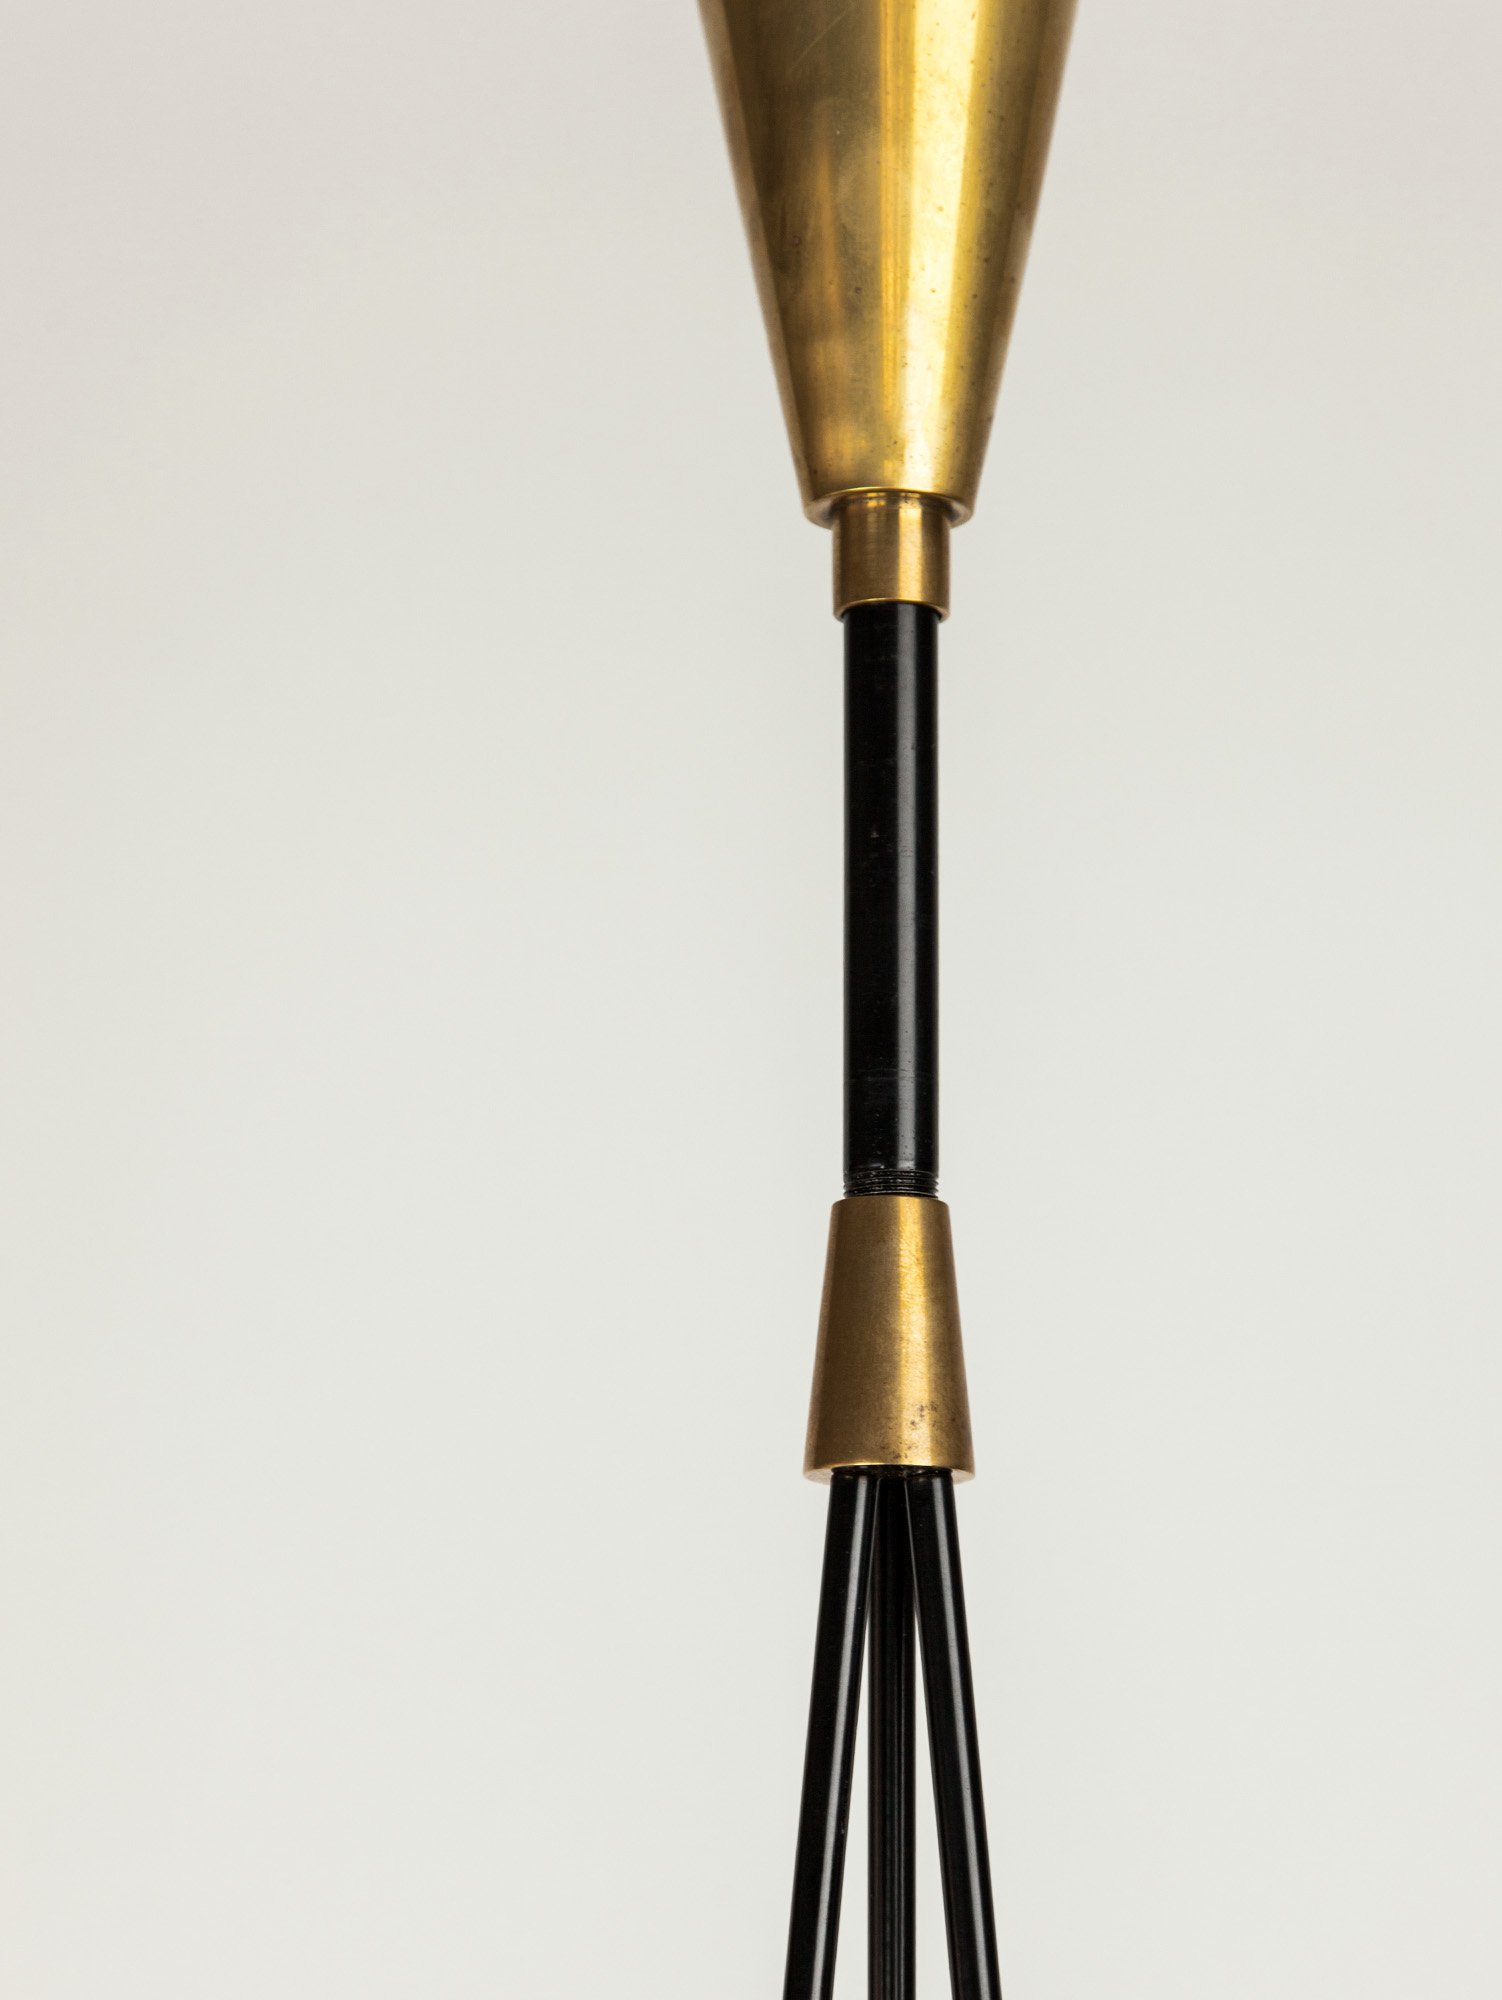 Aesthetiker  Stilnovo Glass and Brass Pendant, Italy, 1950s — Aesthetiker